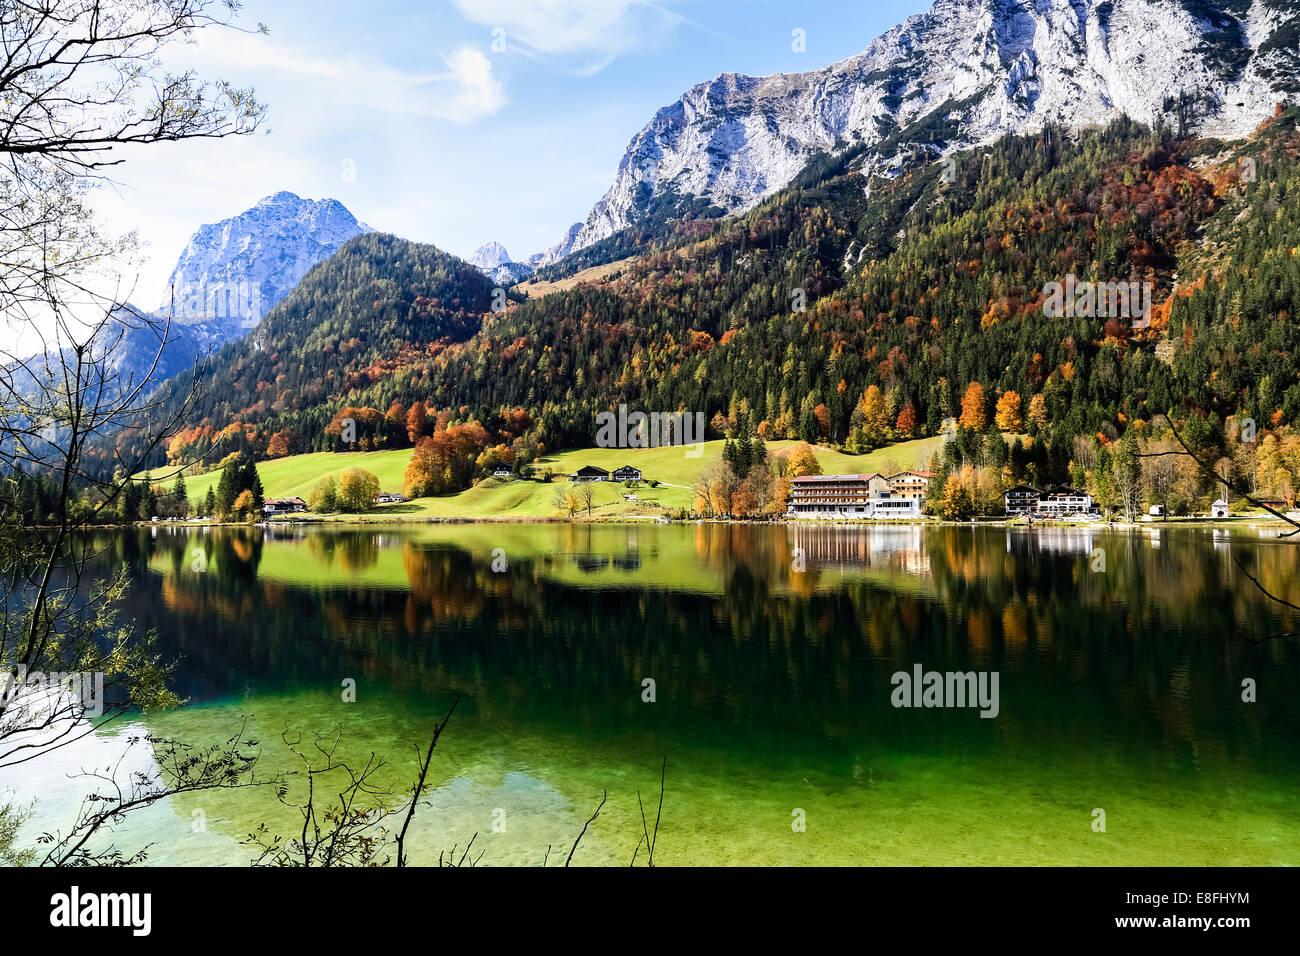 Alemania, Berchtesgaden National Park, Hintersee, vista del lago y de las montañas Foto de stock